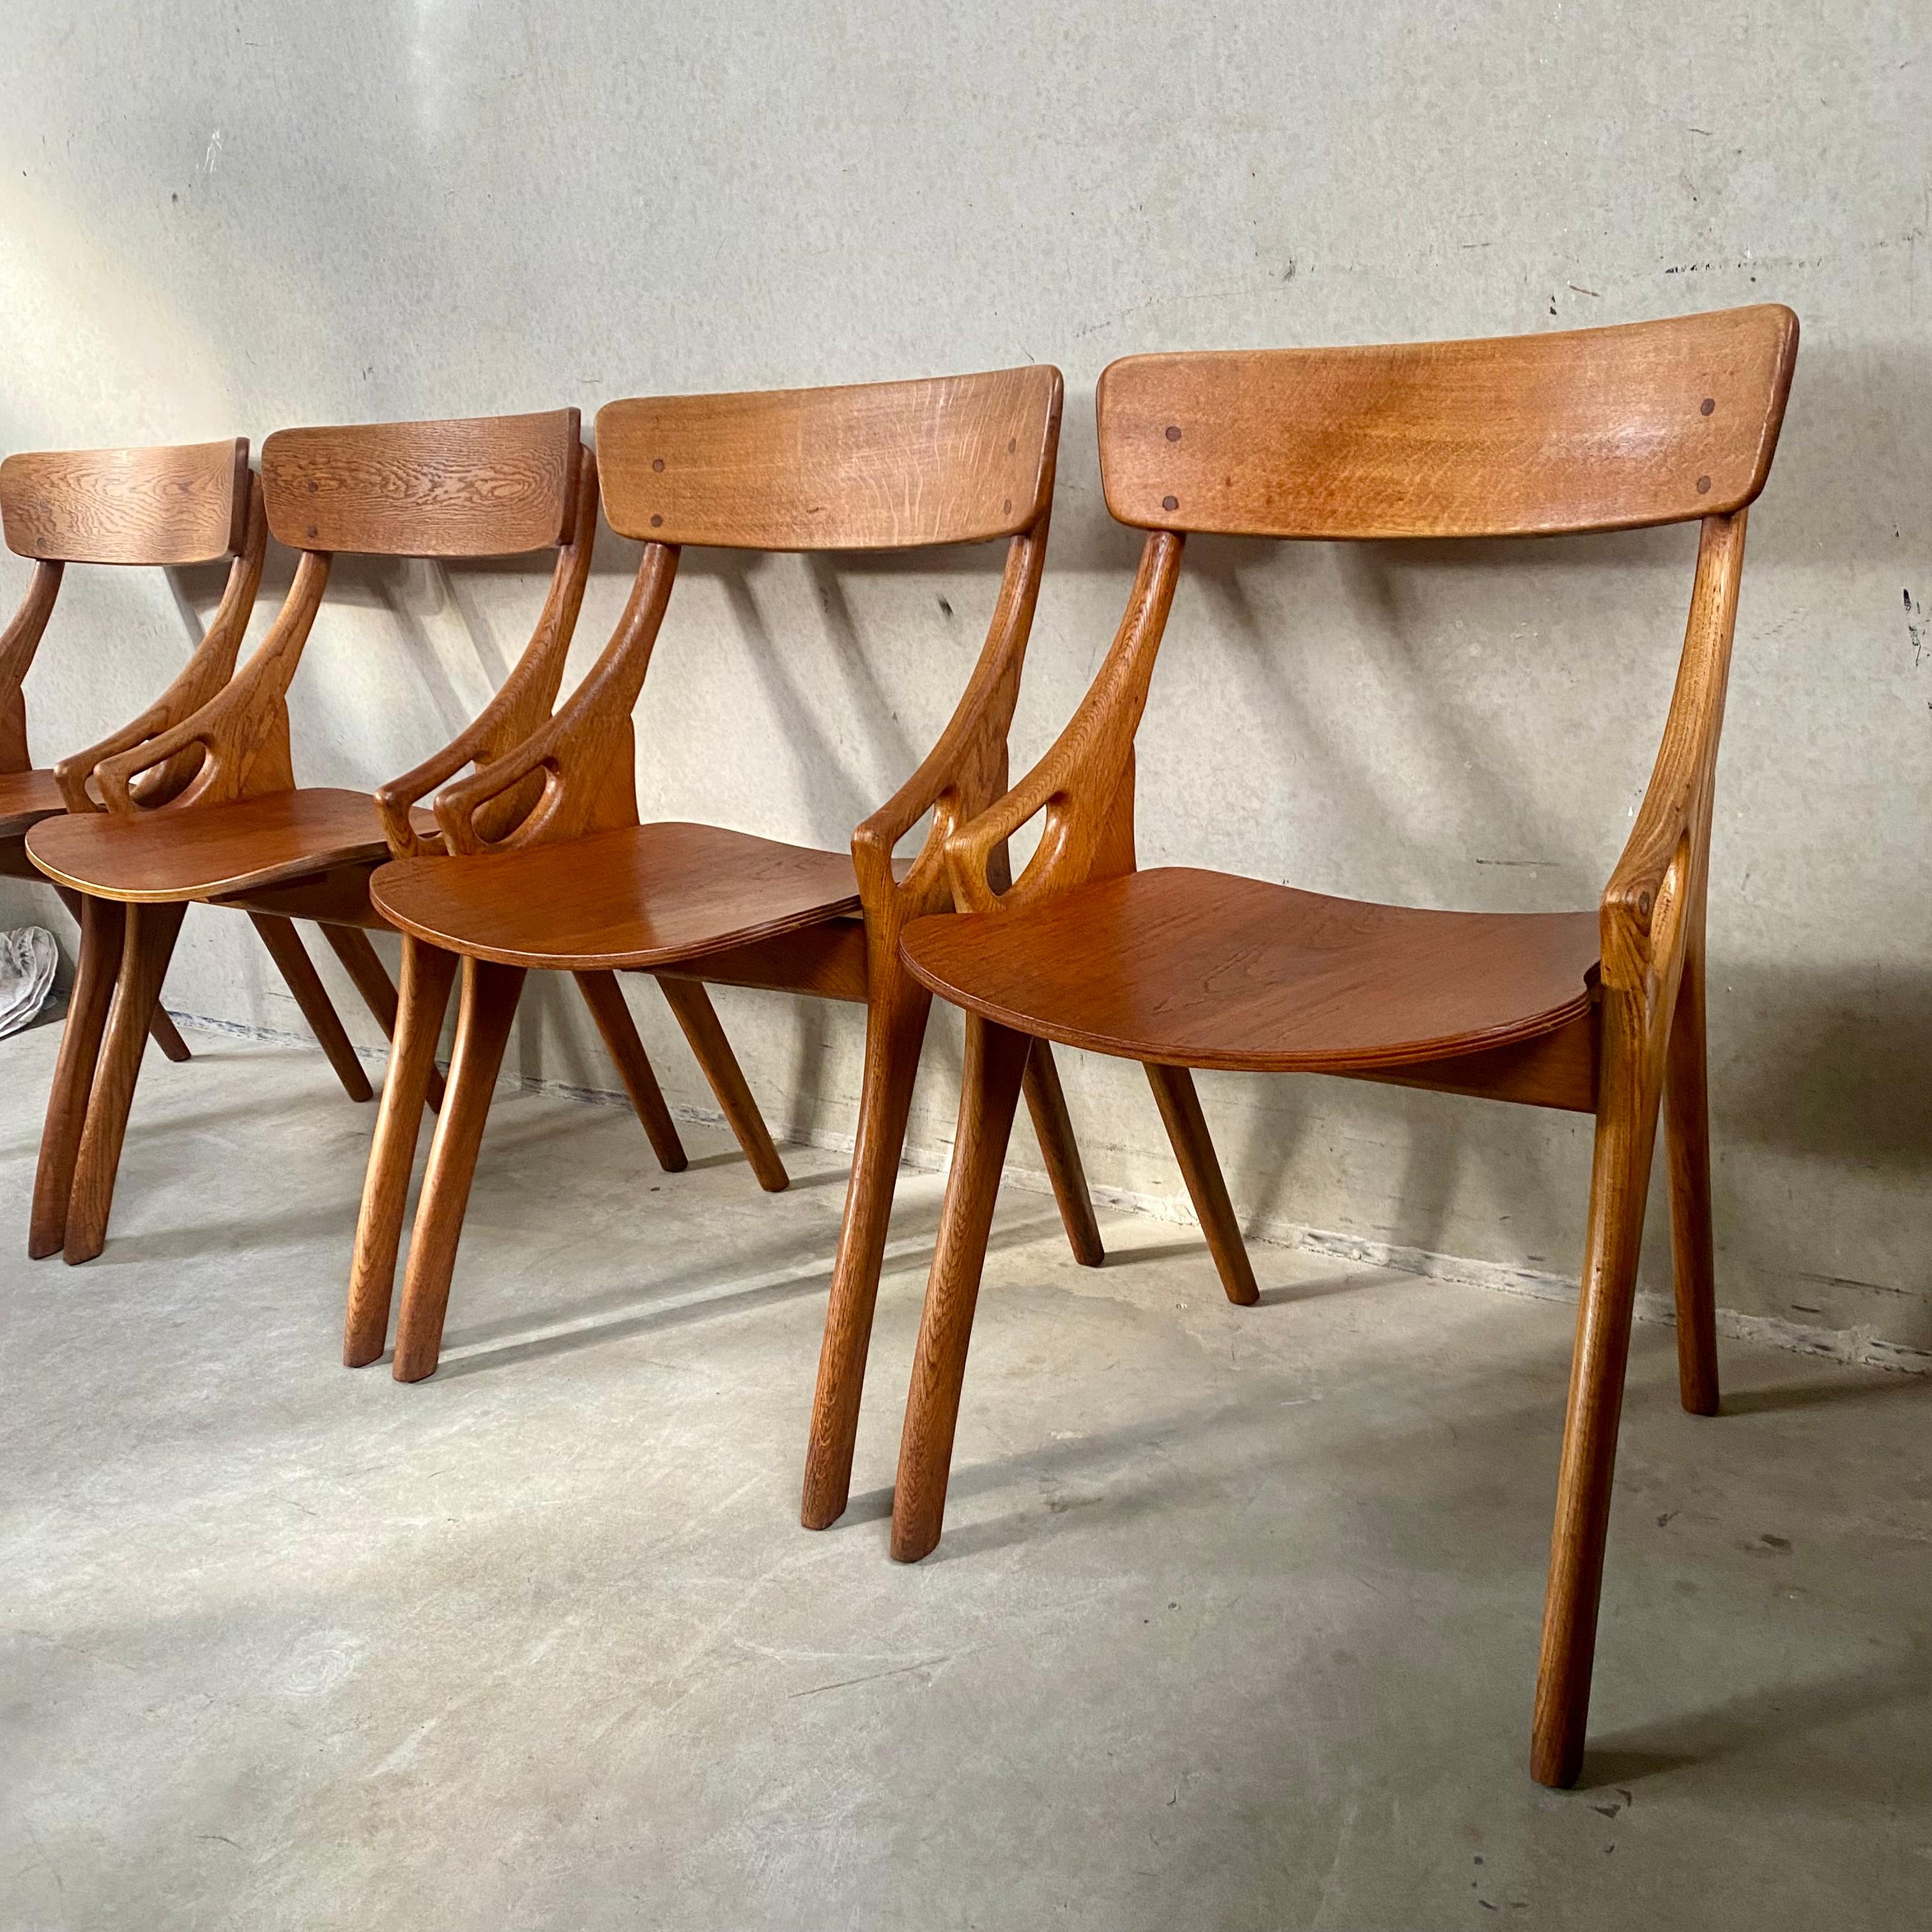 4 Rustic Oak Arne Hovmand Olsen Dining Chairs for Mogens Kold Mobelfabrik 1950 For Sale 13